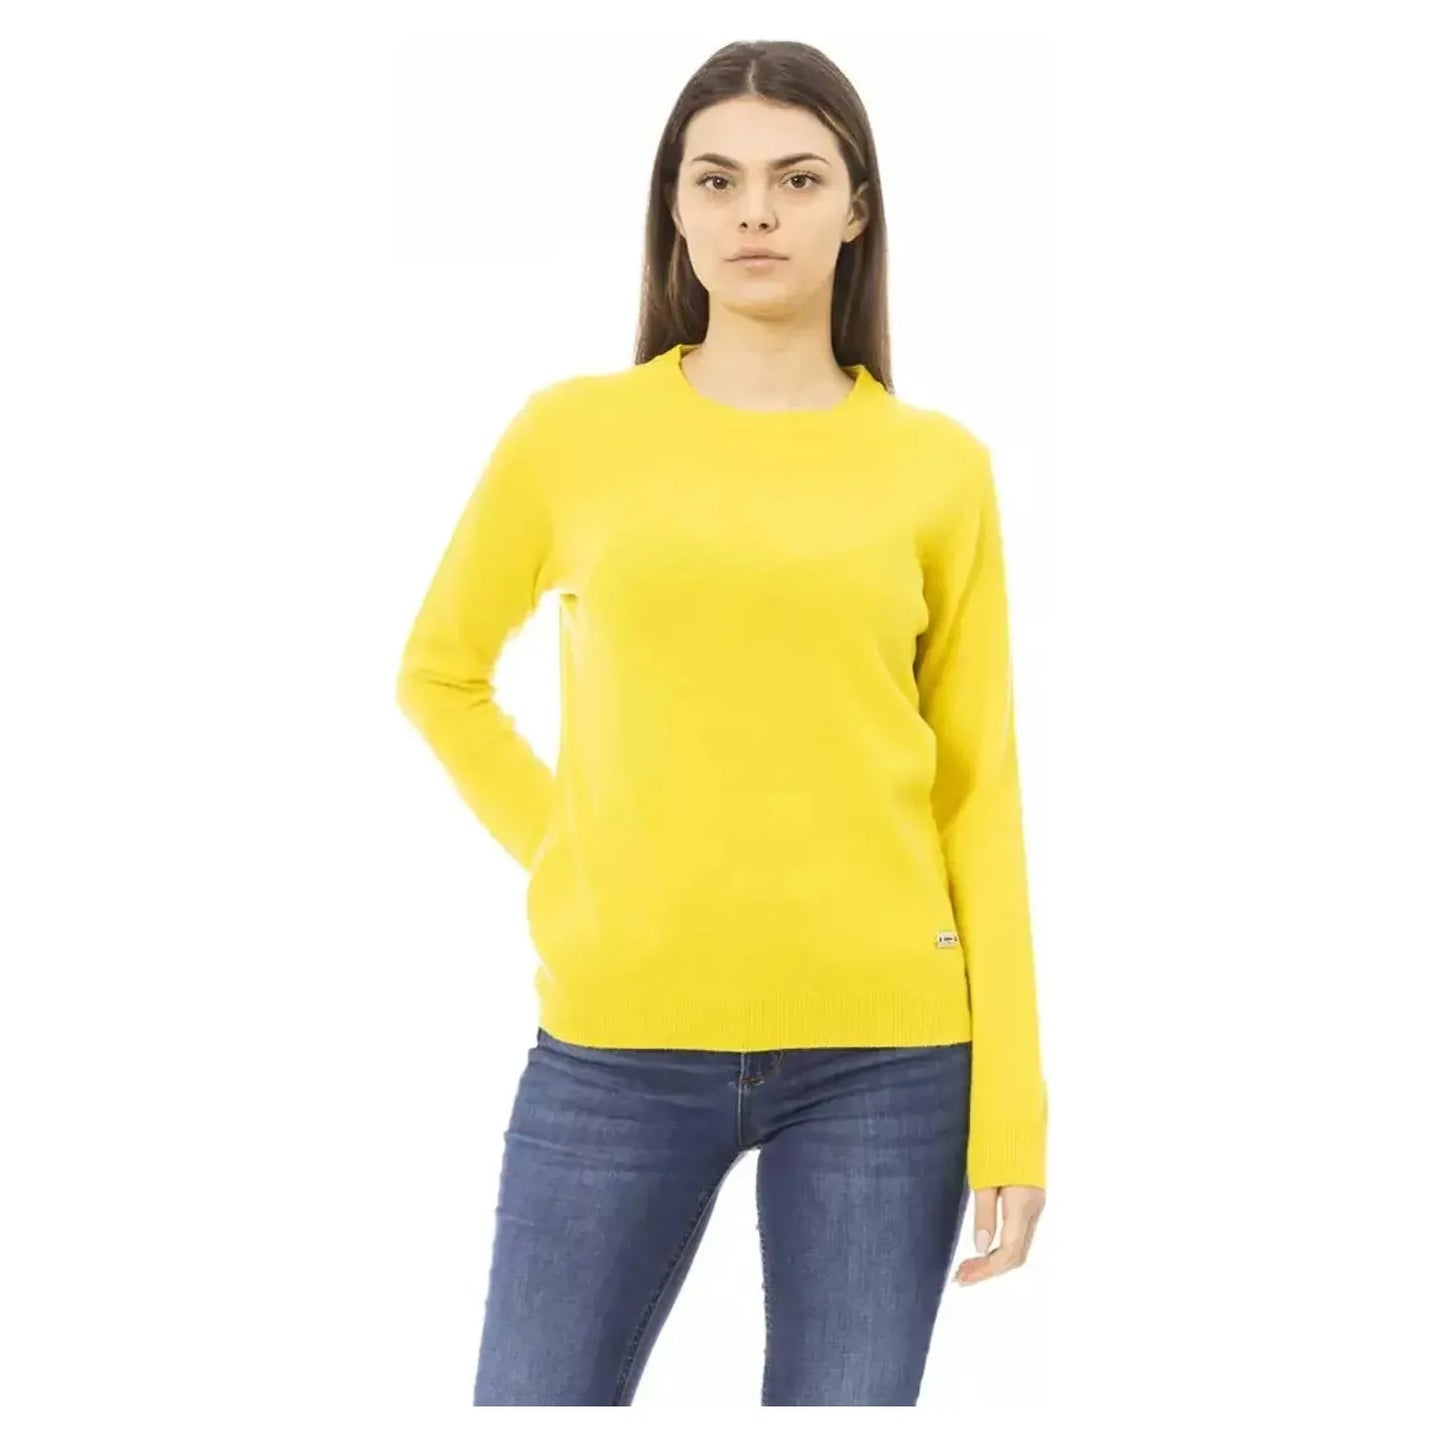 Baldinini TrendChic Wool-Cashmere Crewneck Sweater in YellowMcRichard Designer Brands£99.00